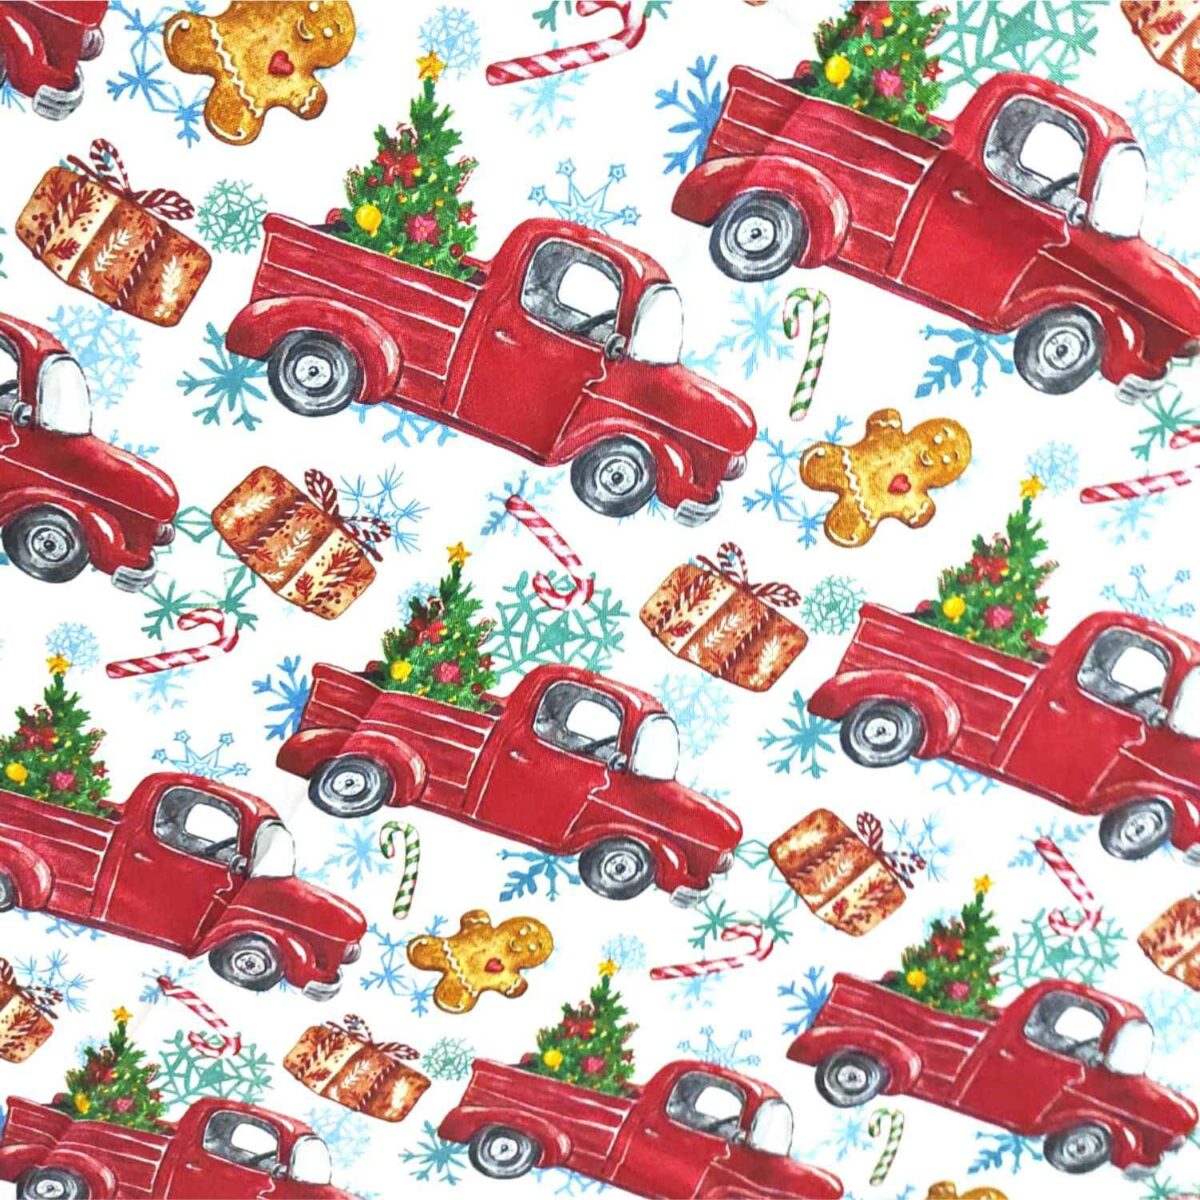 christmas-car-tovaglia-antimacchia-natalizia-idrorepellente-no-stiro-bianco-rosso-verde-natale-capodanno-dettaglio-fantasia